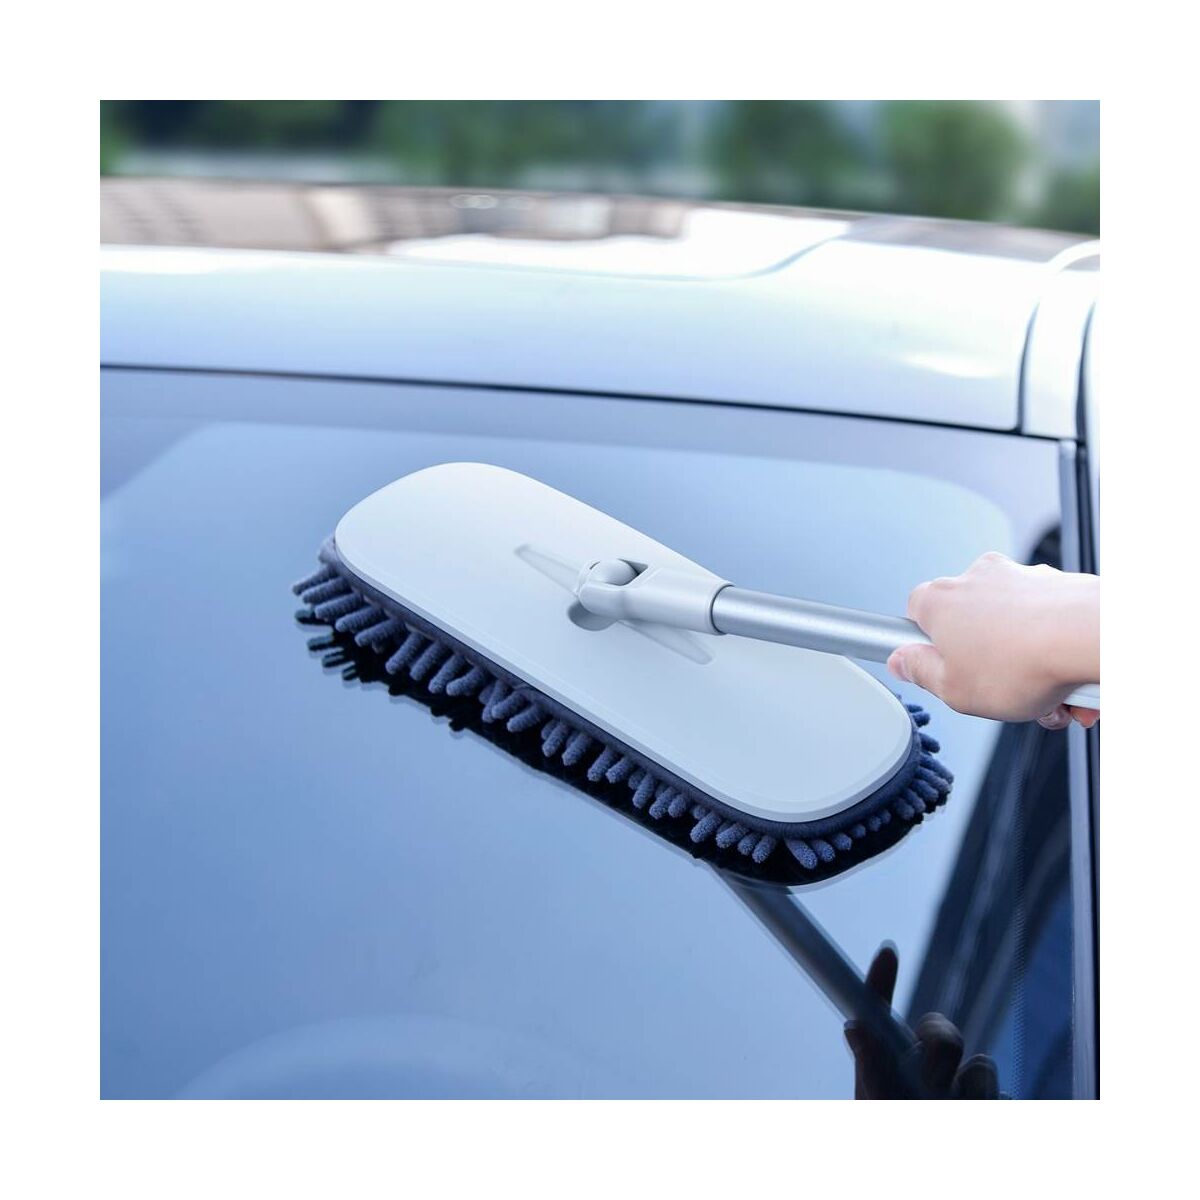 Kép 16/16 - Baseus autós kiegészítő, Handy Car Home mosó/tisztító nyélhez cserélhető ruha fej (2db / csomag) 100% poliészter chenille, szürke (CRTB-A0G)